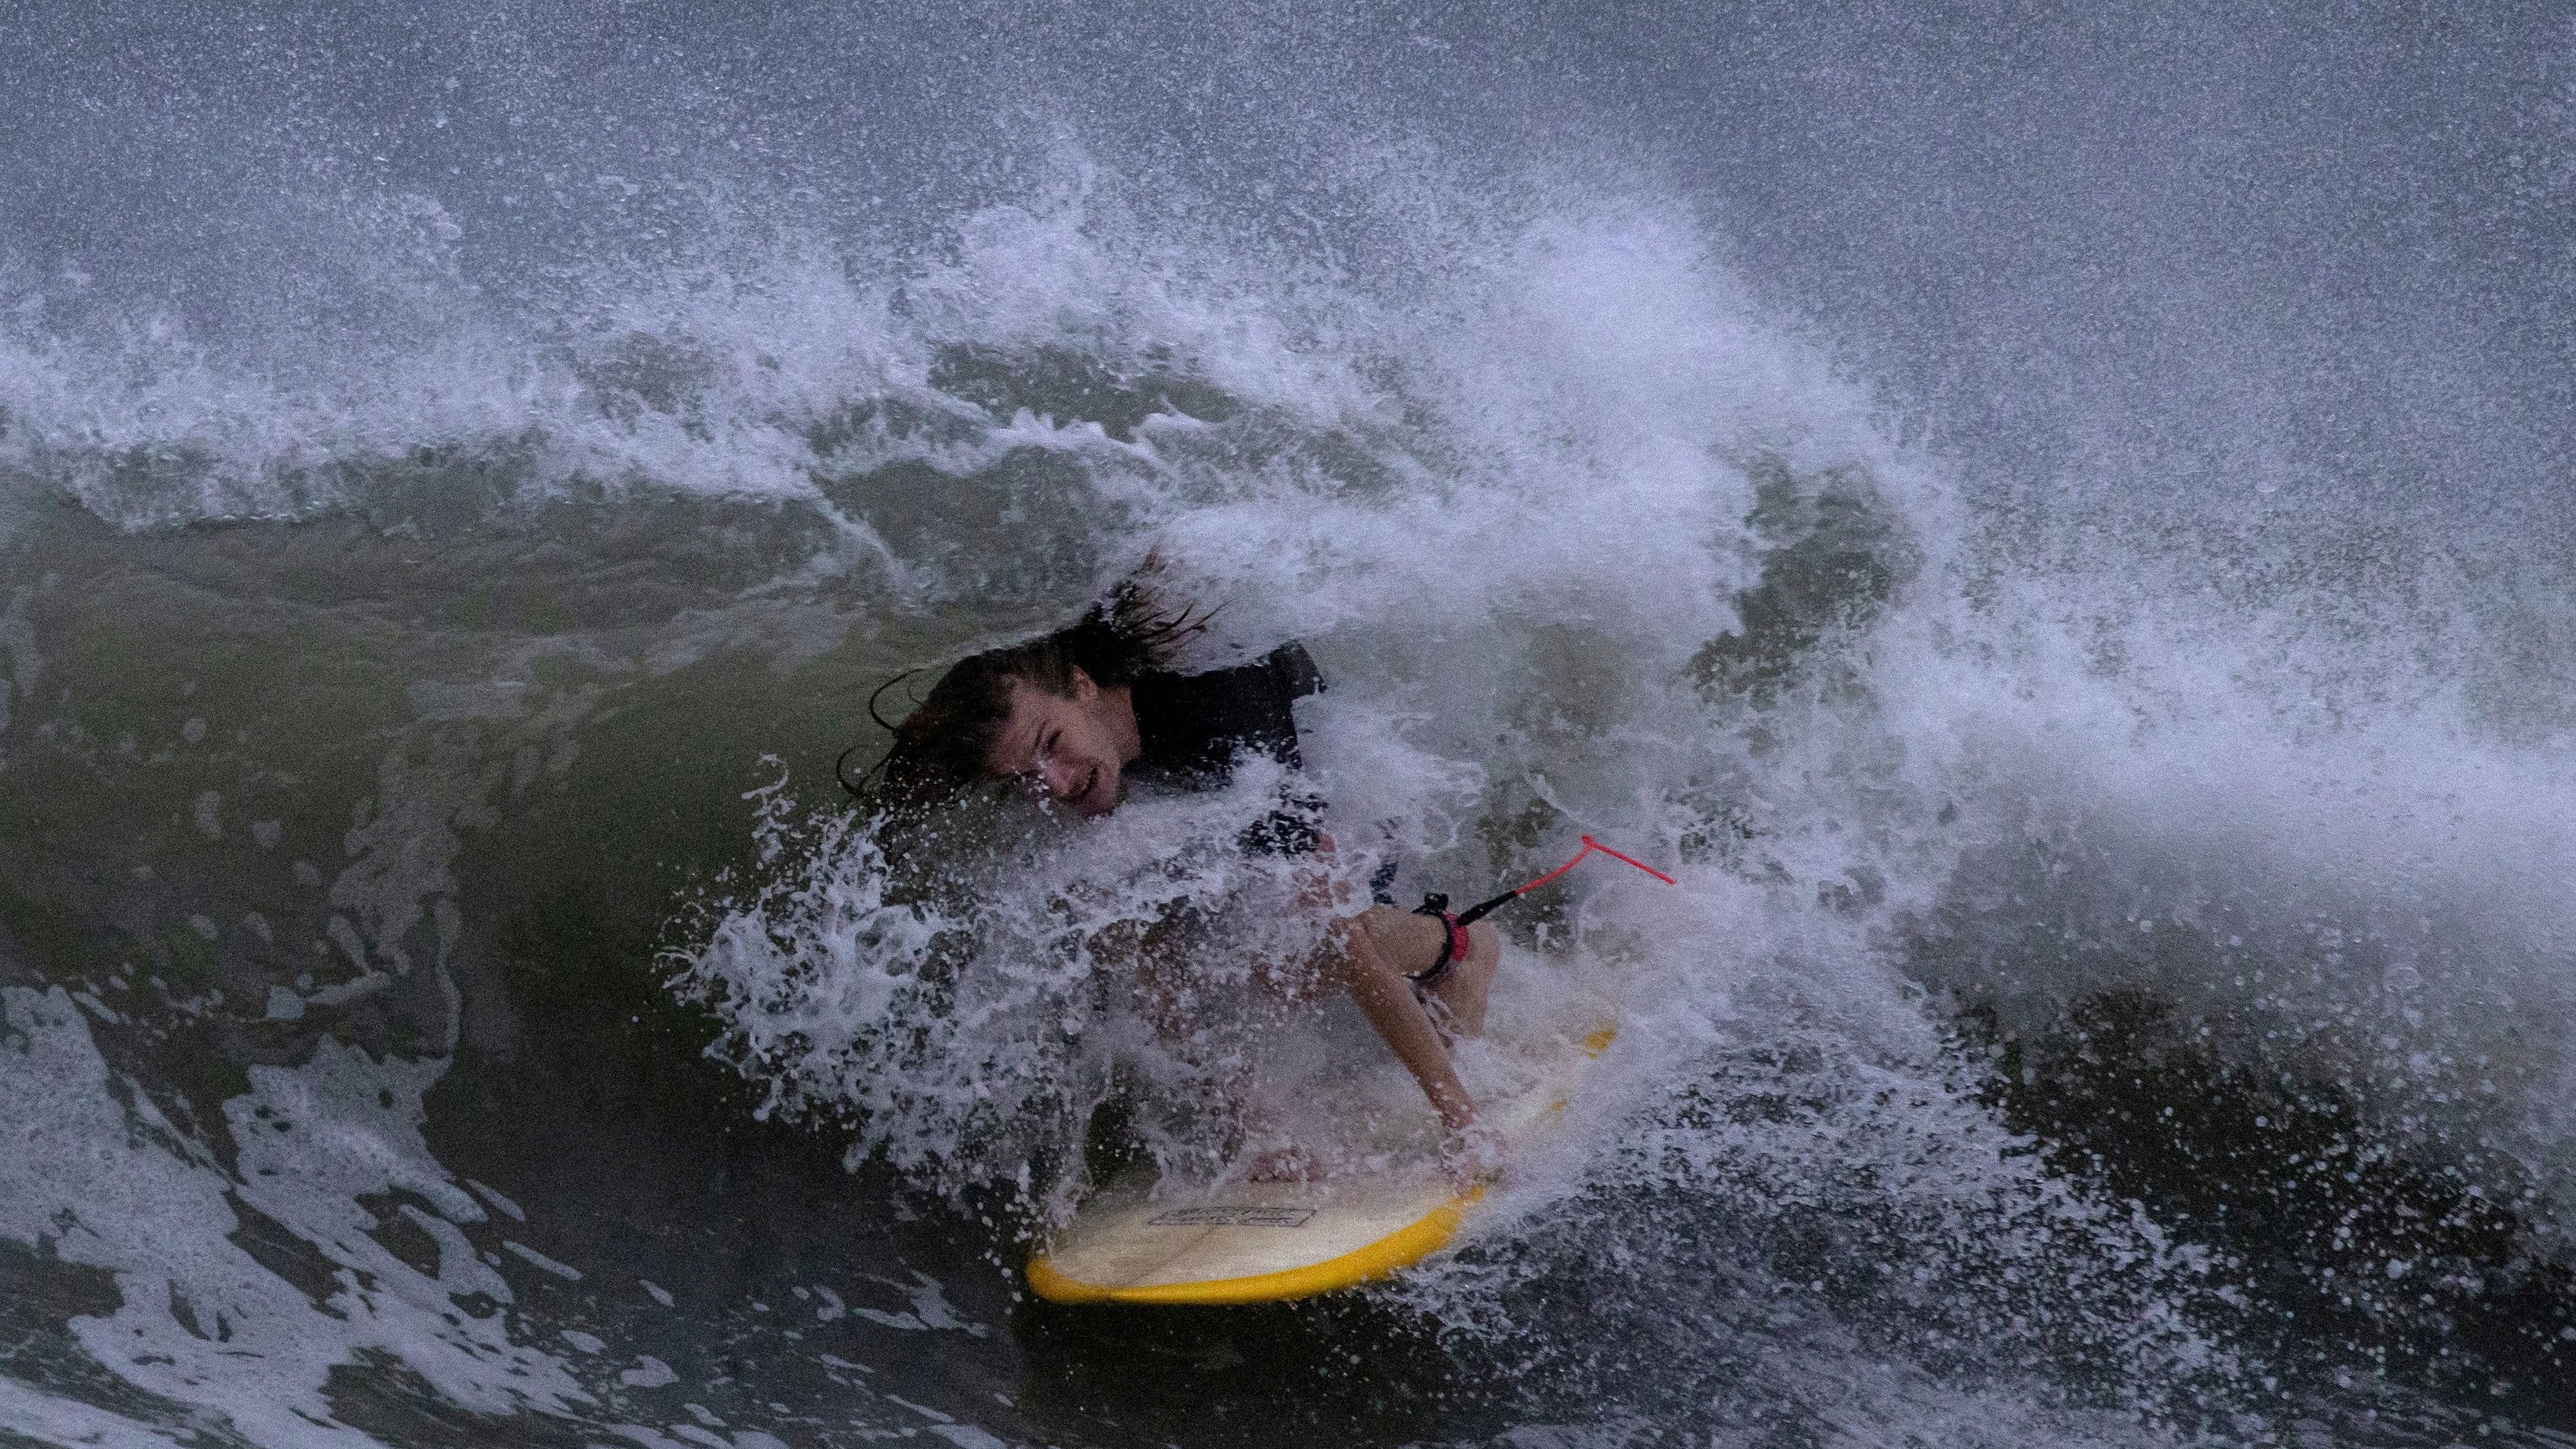 <div class="paragraphs"><p>A surfer rides the swells ahead of Hurricane Idalia in Clearwater Beach, Florida.&nbsp;</p></div>